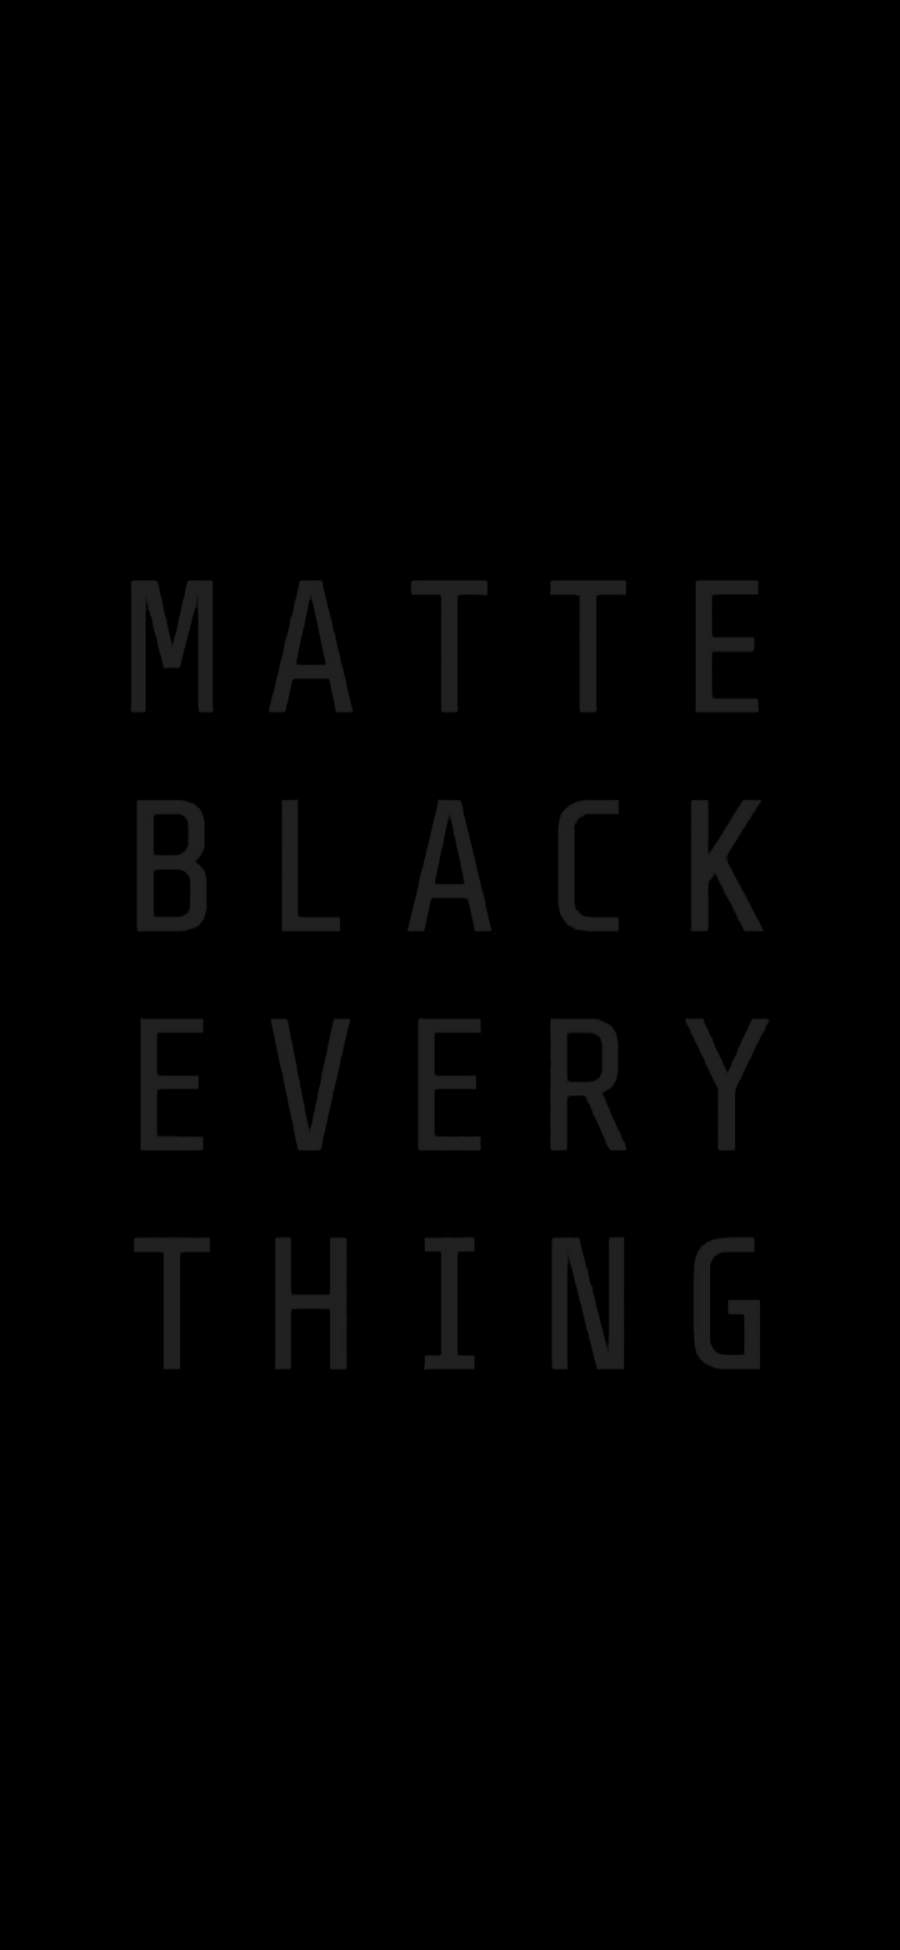 MATTE BLACK EVERYTHING